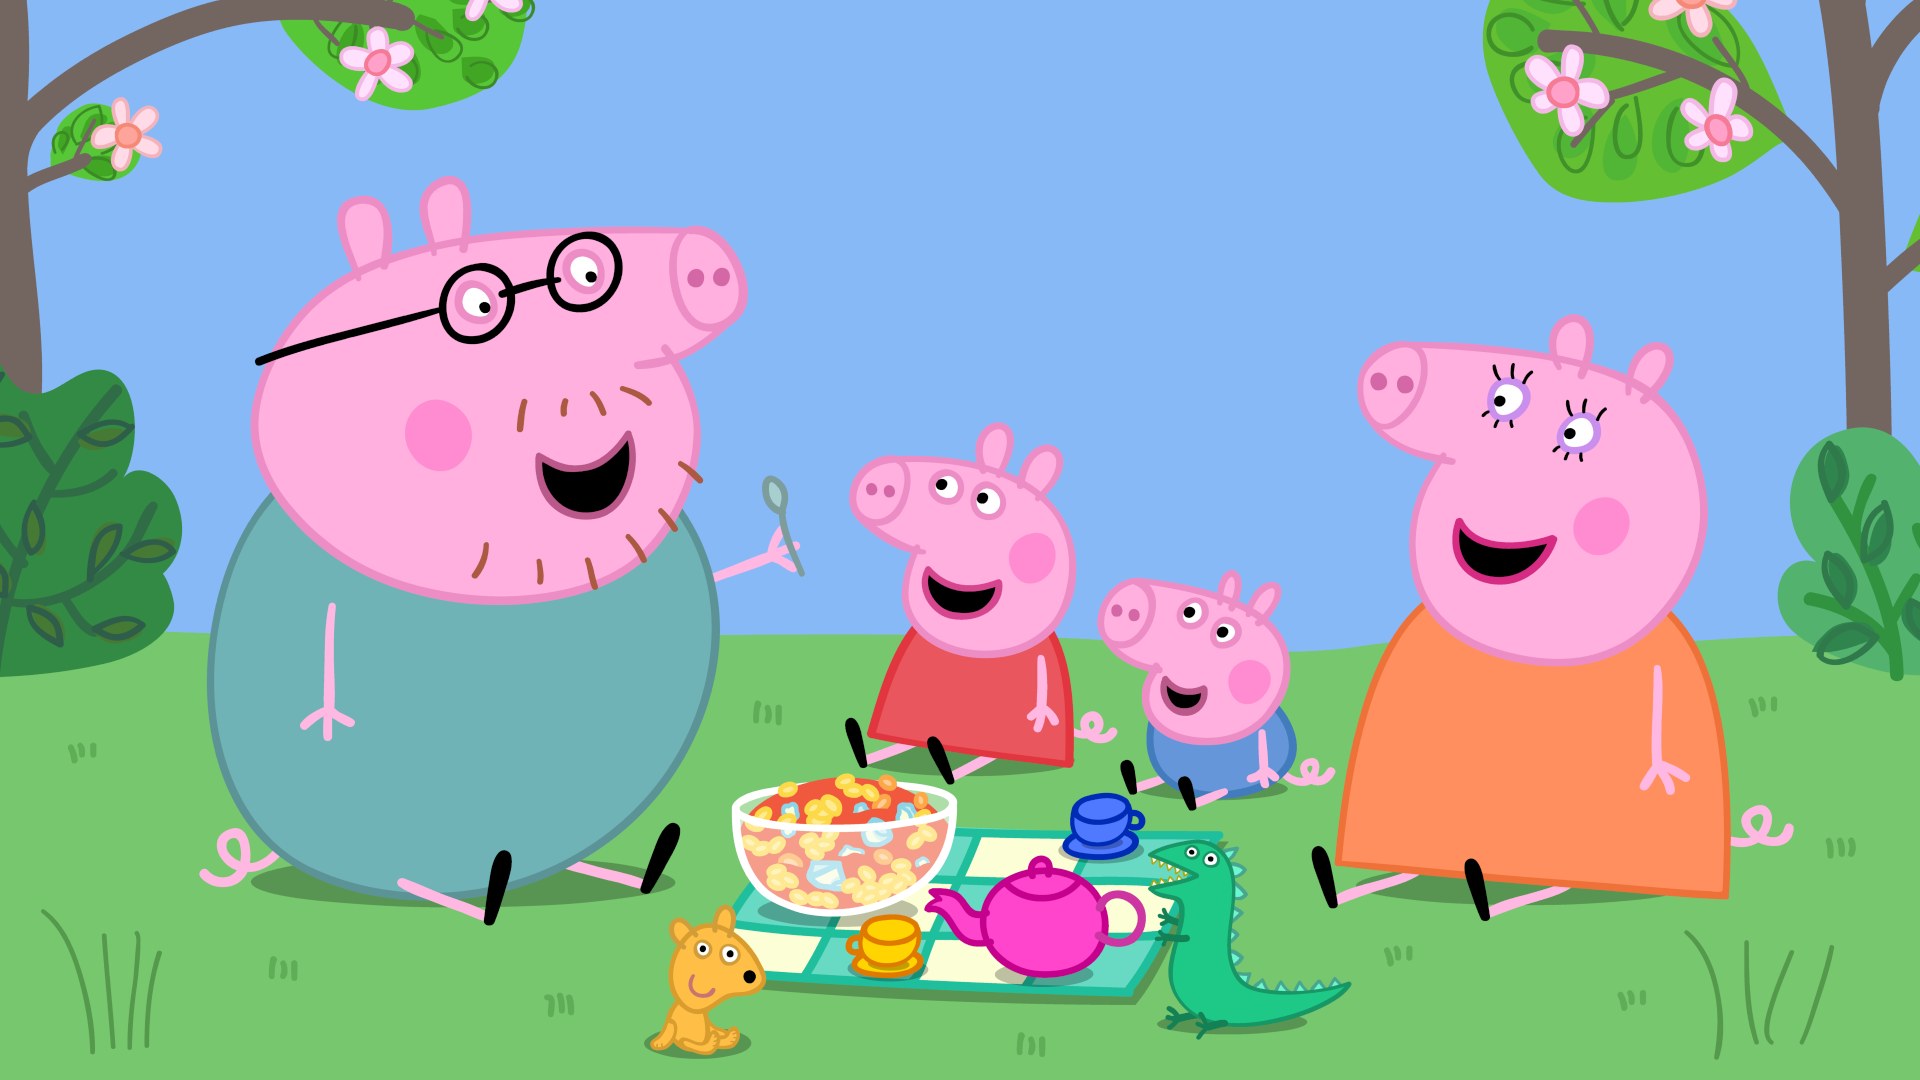 TV Cultura adquire direitos de Peppa Pig e estreia desenho na